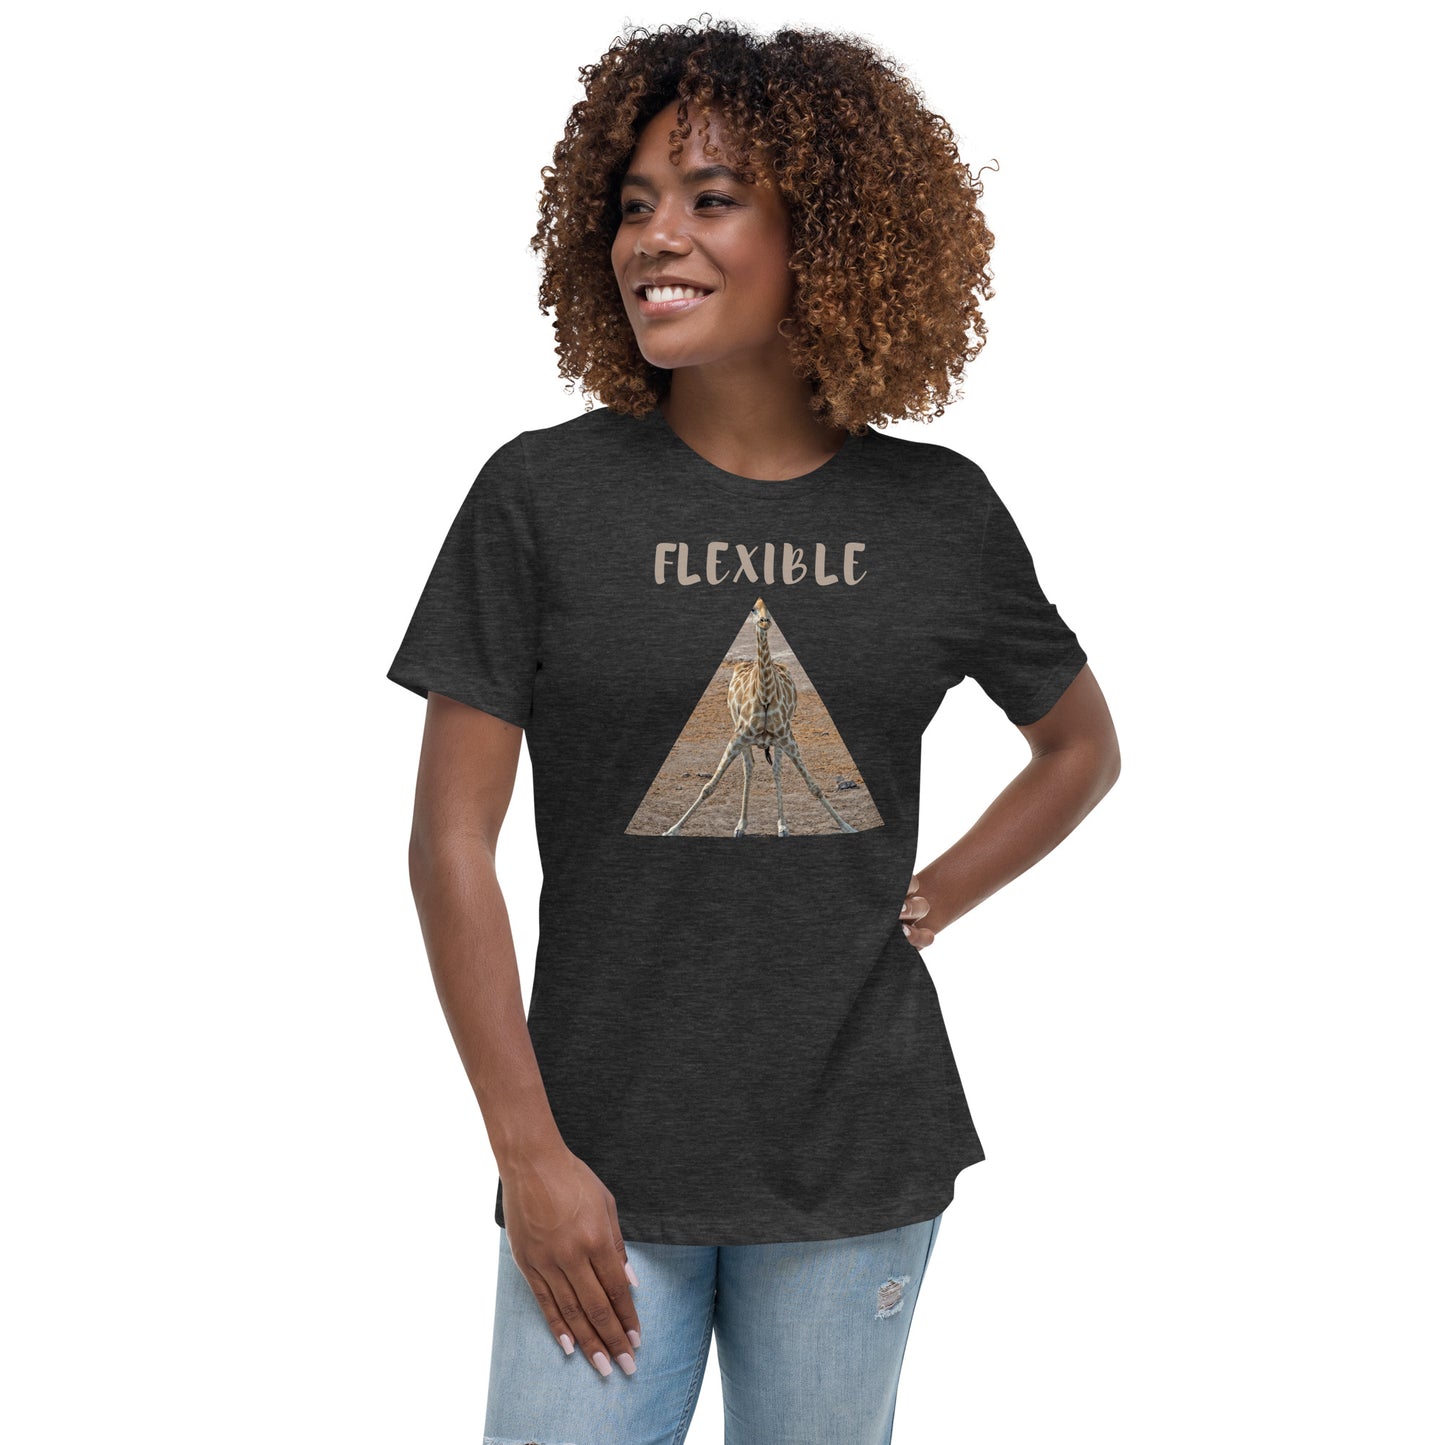 Flexible Women's Relaxed T-Shirt